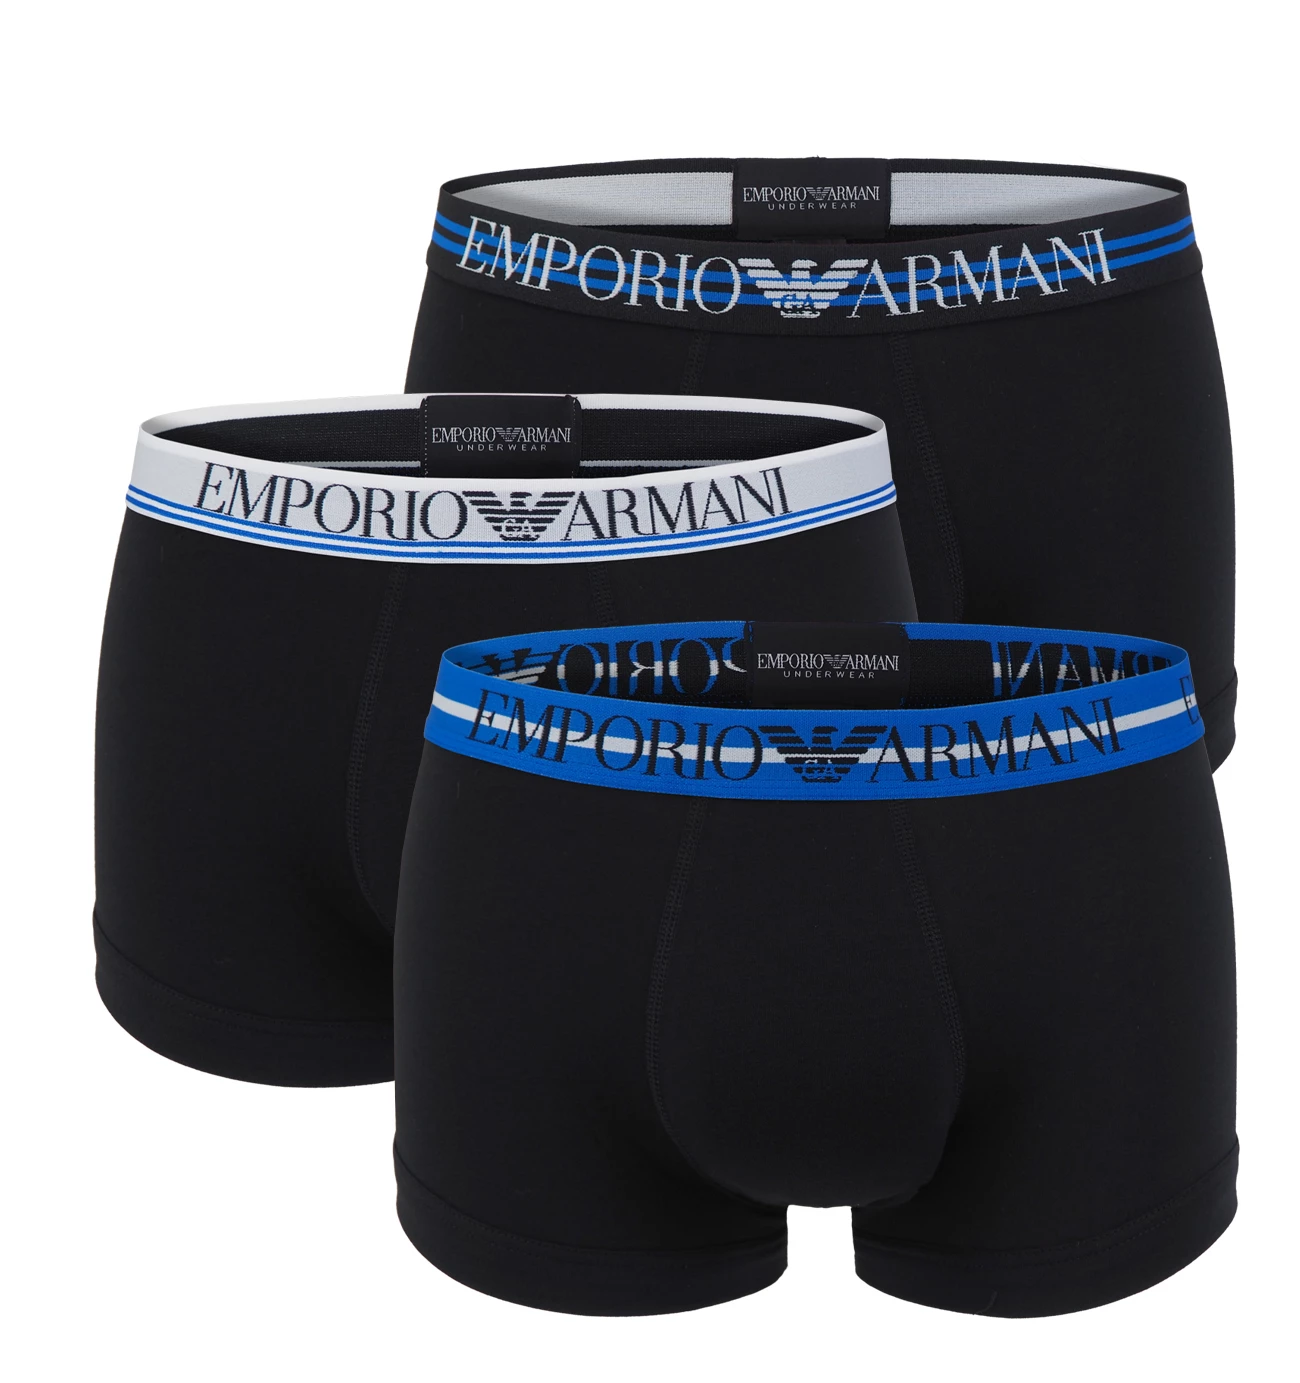 EMPORIO ARMANI - boxerky 3PACK stretch cotton fashion nero Armani logo - limited edition